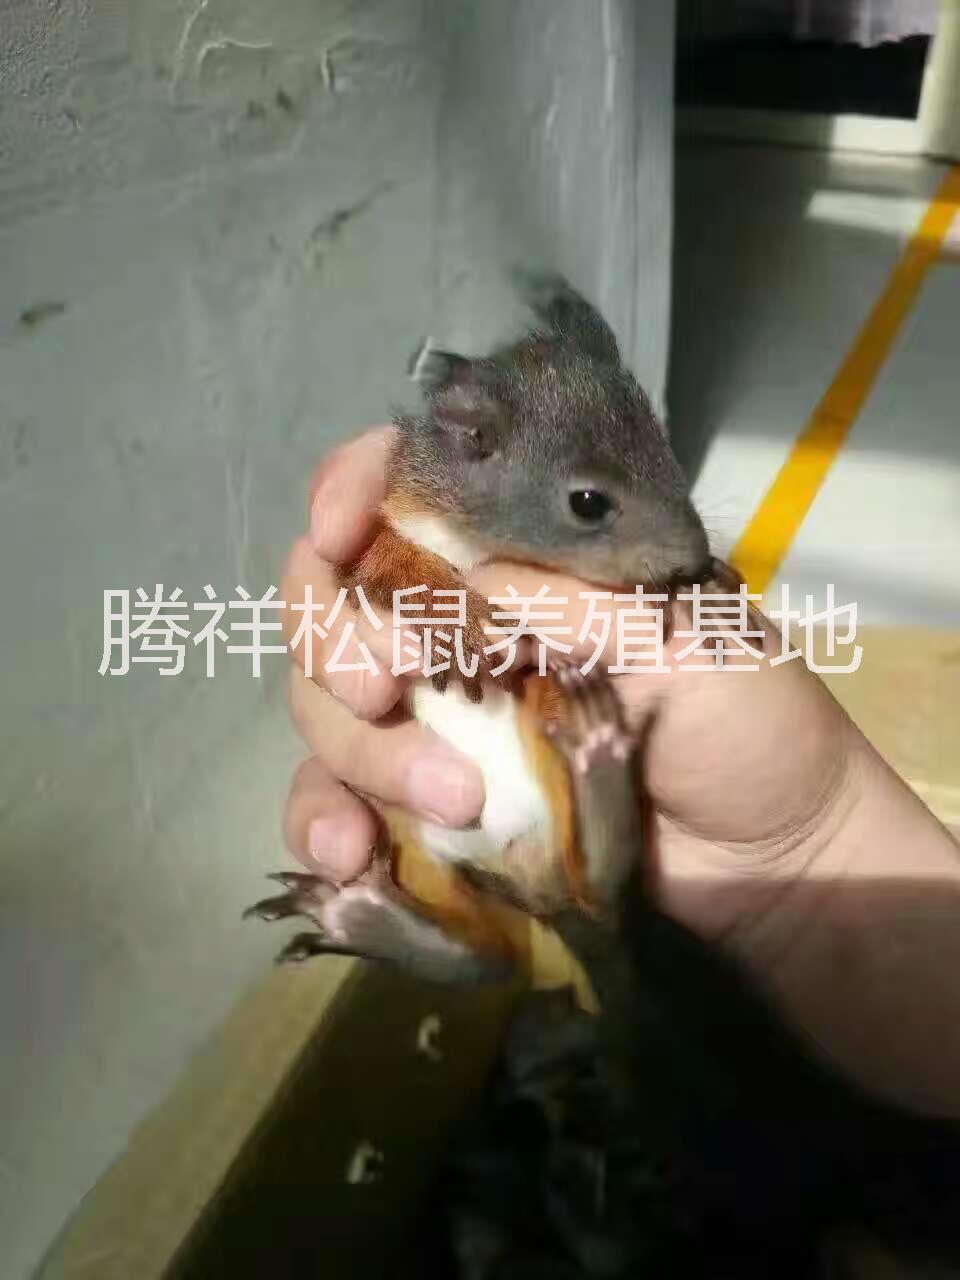 魔王松鼠哪里有卖宠物松鼠松鼠幼鼠 魔王松鼠 松鼠幼鼠